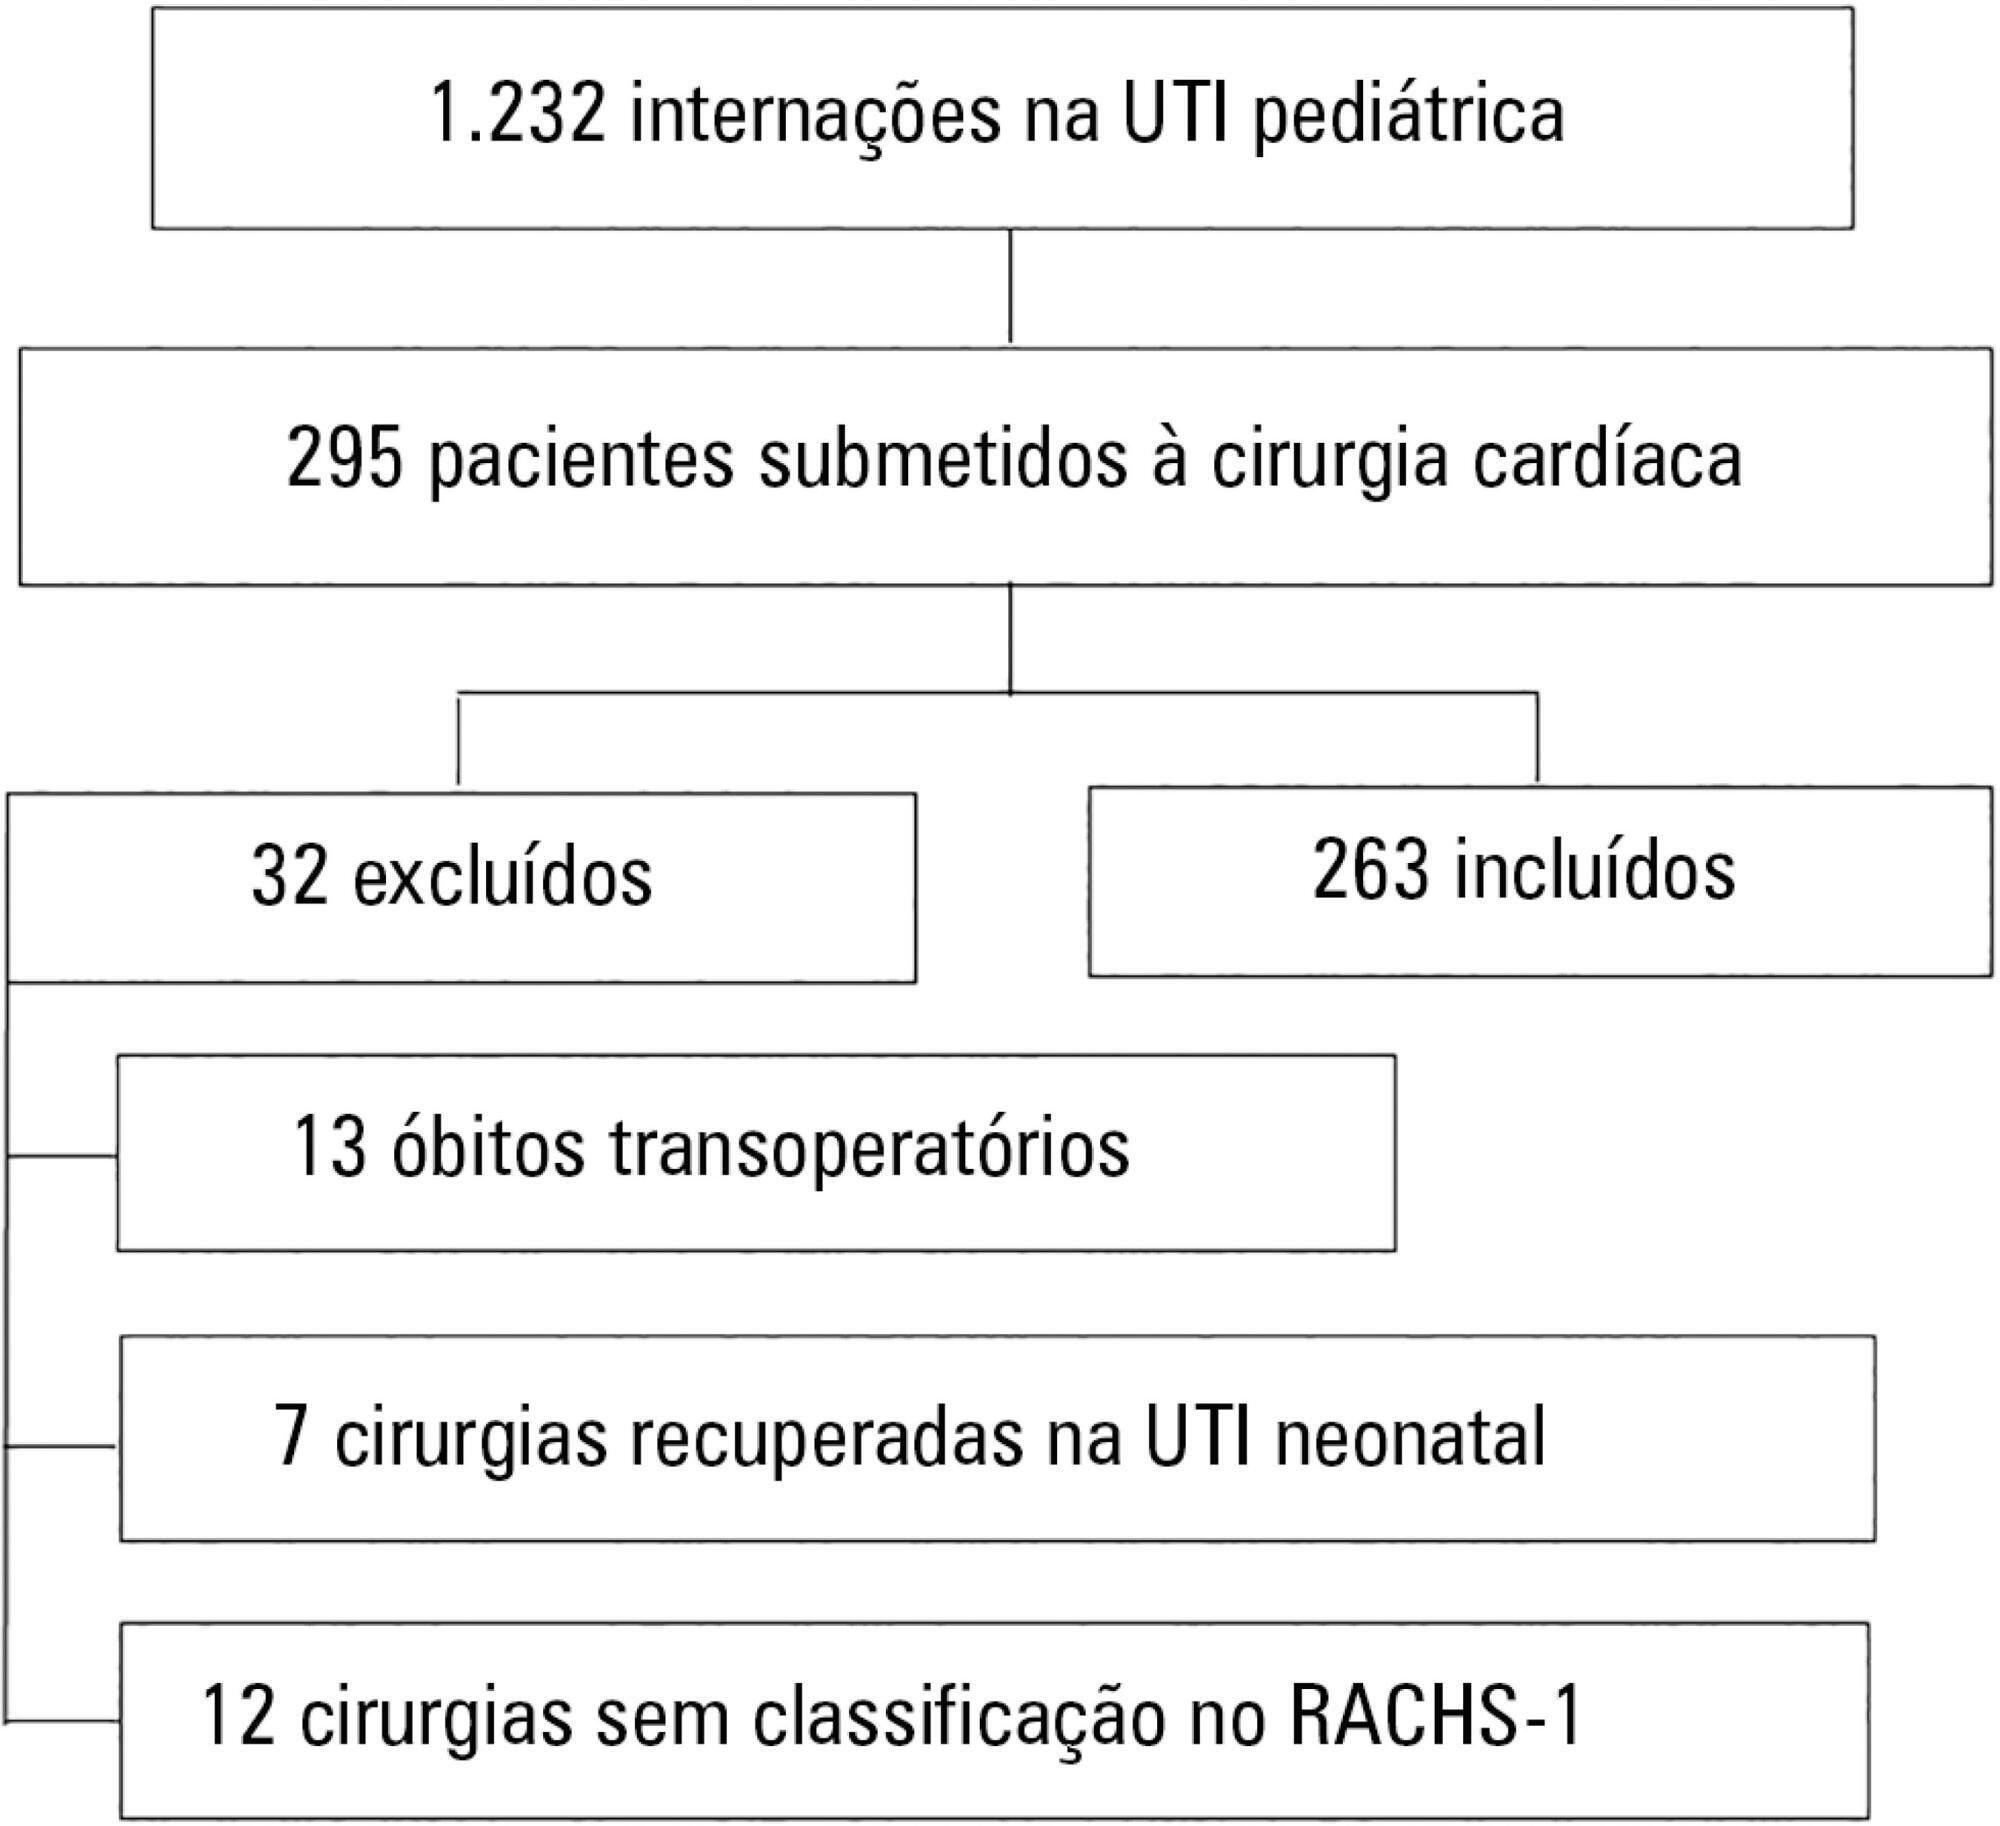 Avaliação do desempenho do PIM-2 entre pacientes cardiopatas cirúrgicos e correlação dos resultados com RACHS-1